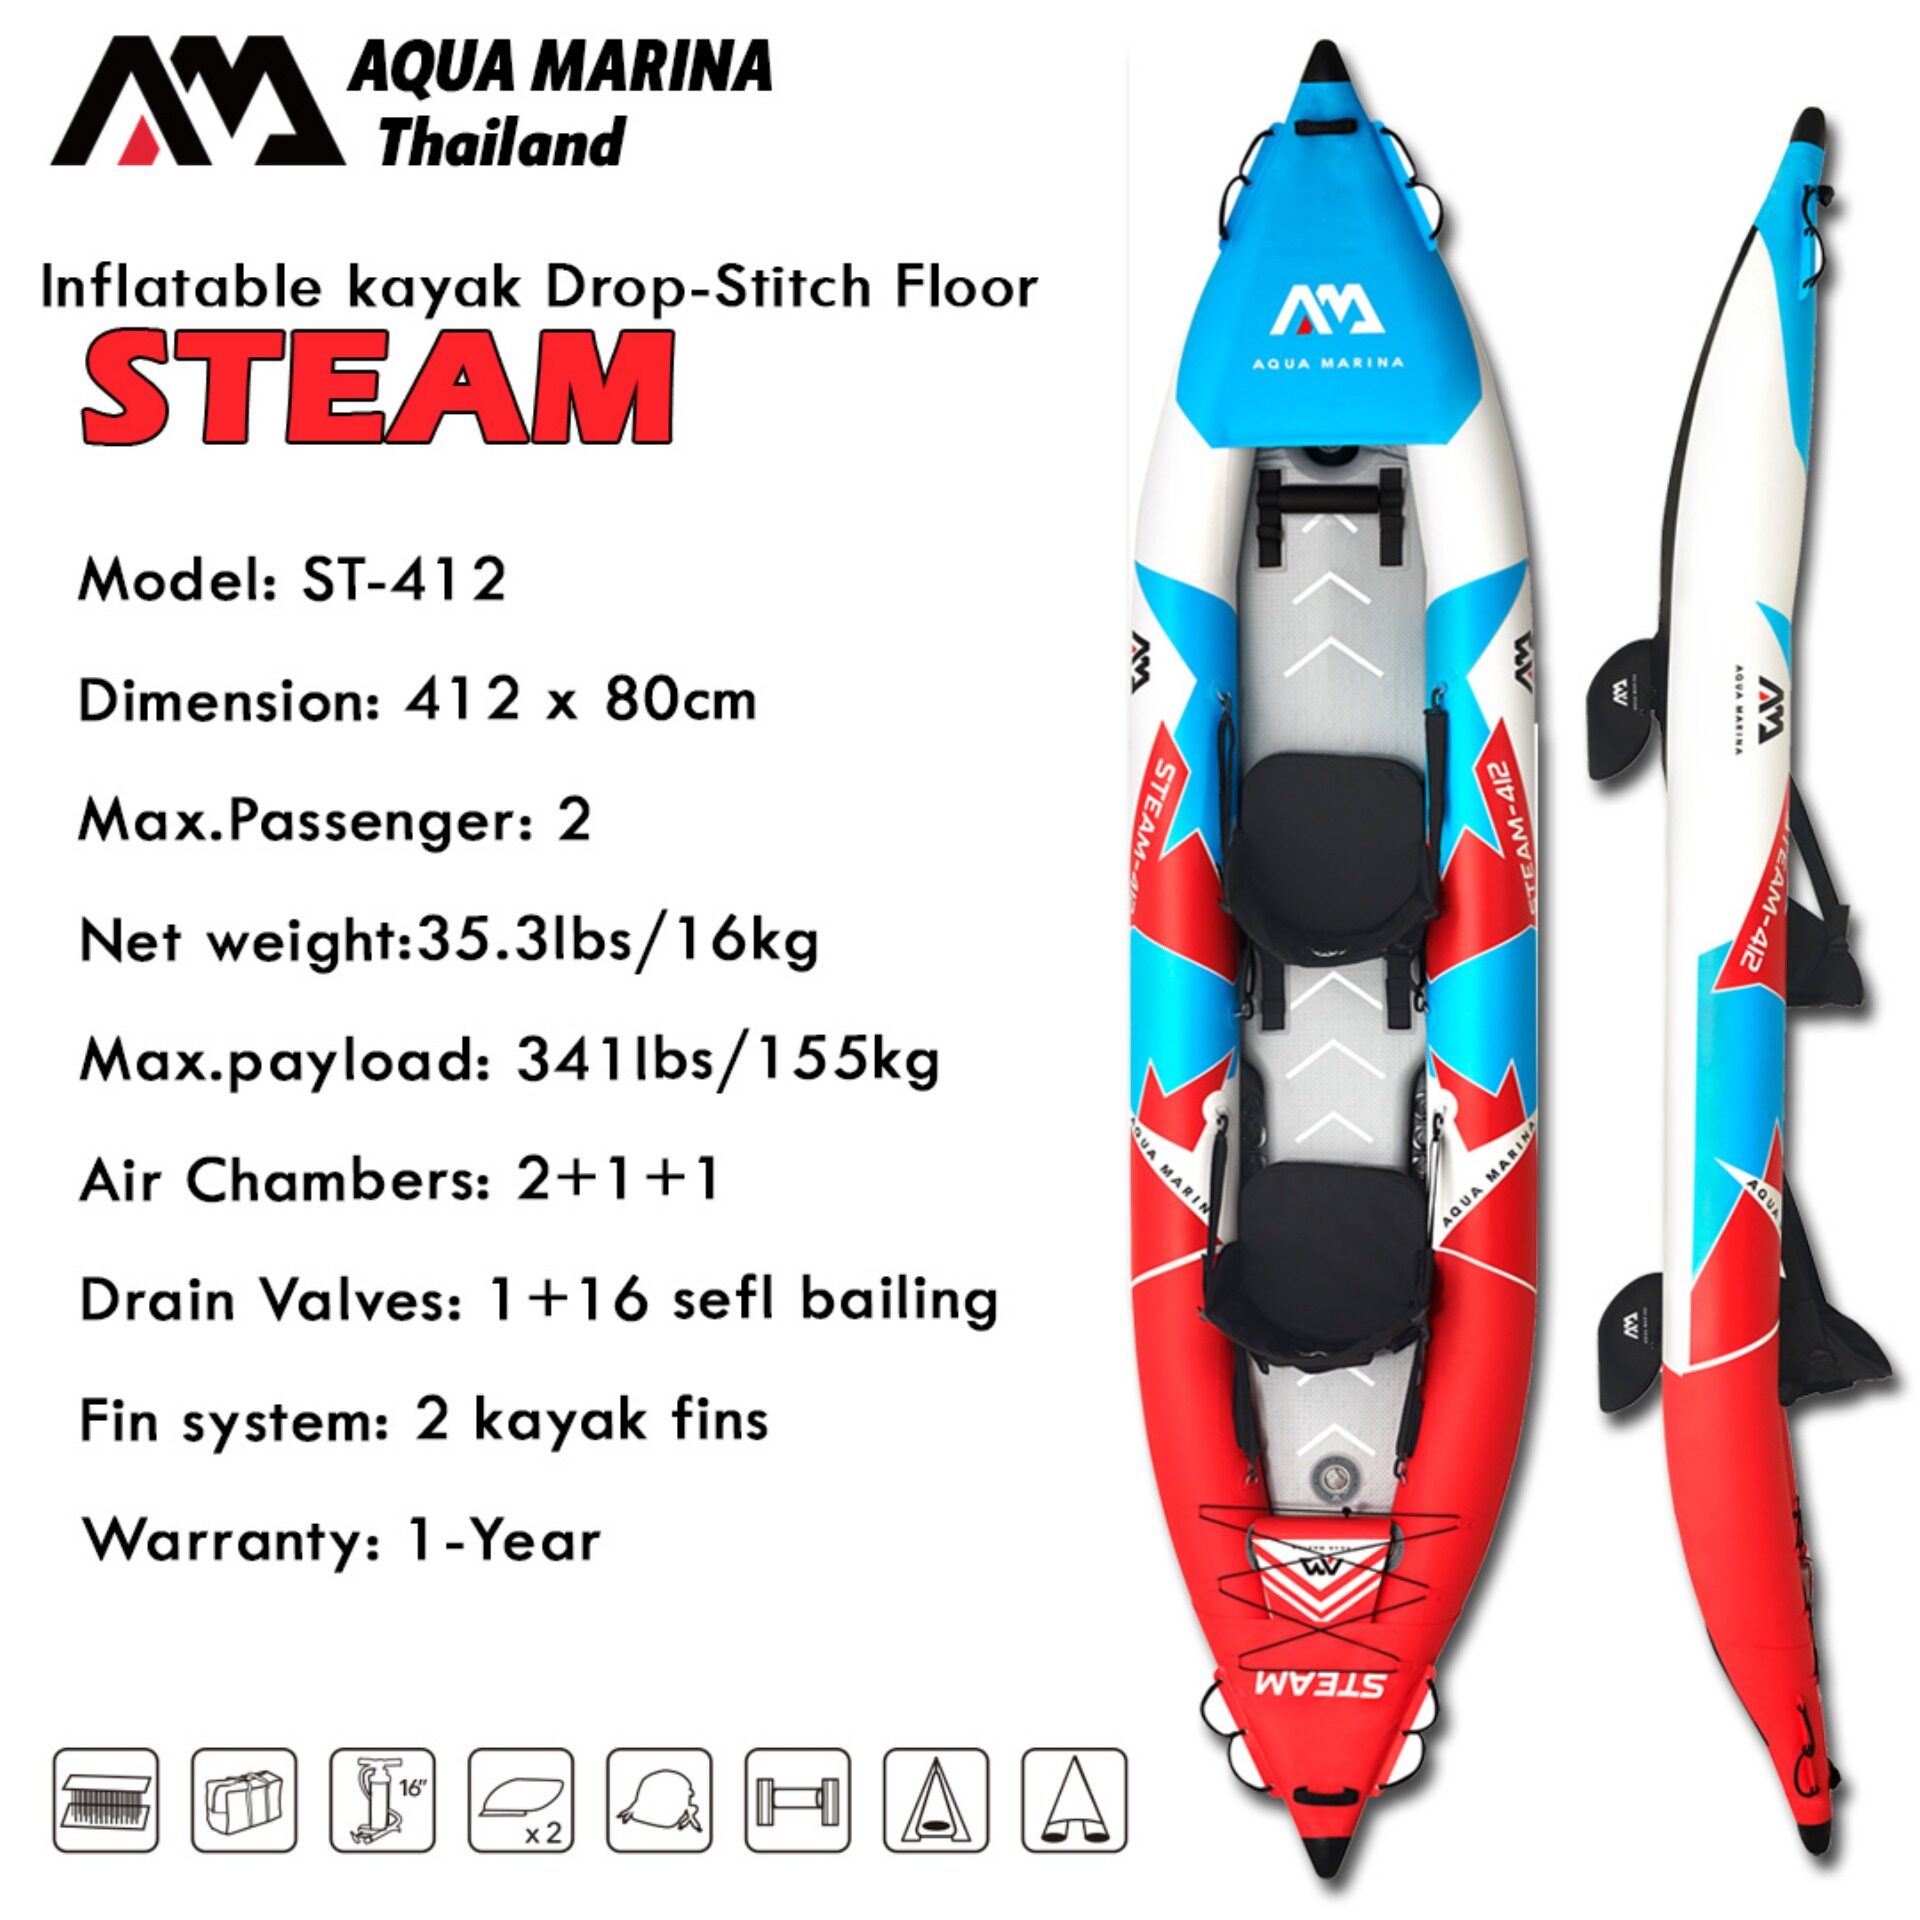 Aqua Marina STEAM ST-412 Drop-Stitch Floor Inflatable Air Kayak Boat Canoe 2 Person AquaMarina เรือคายัค เรือยาง